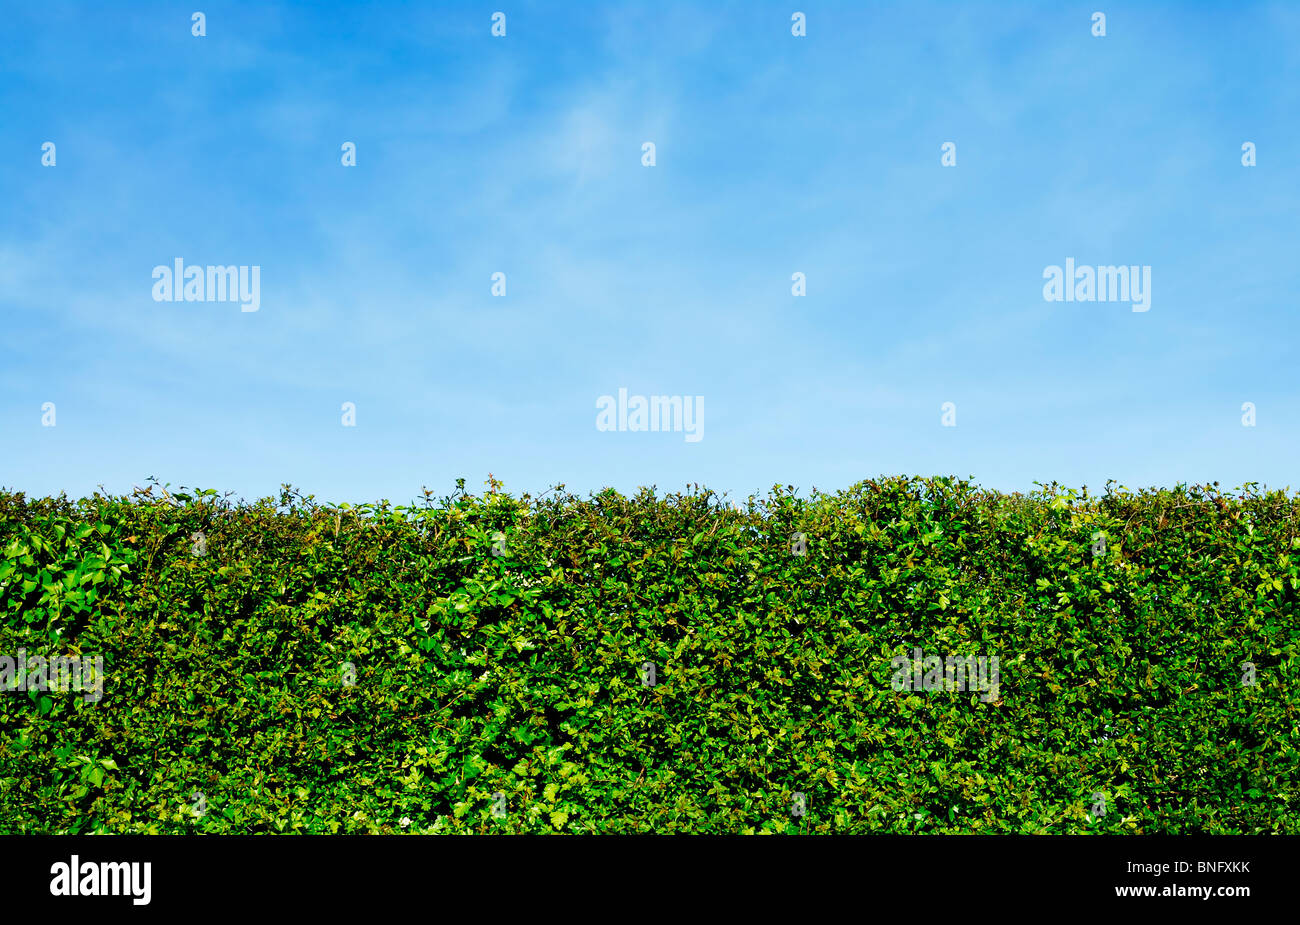 Cobertura de jardín en verano, con el cielo azul detrás Foto de stock